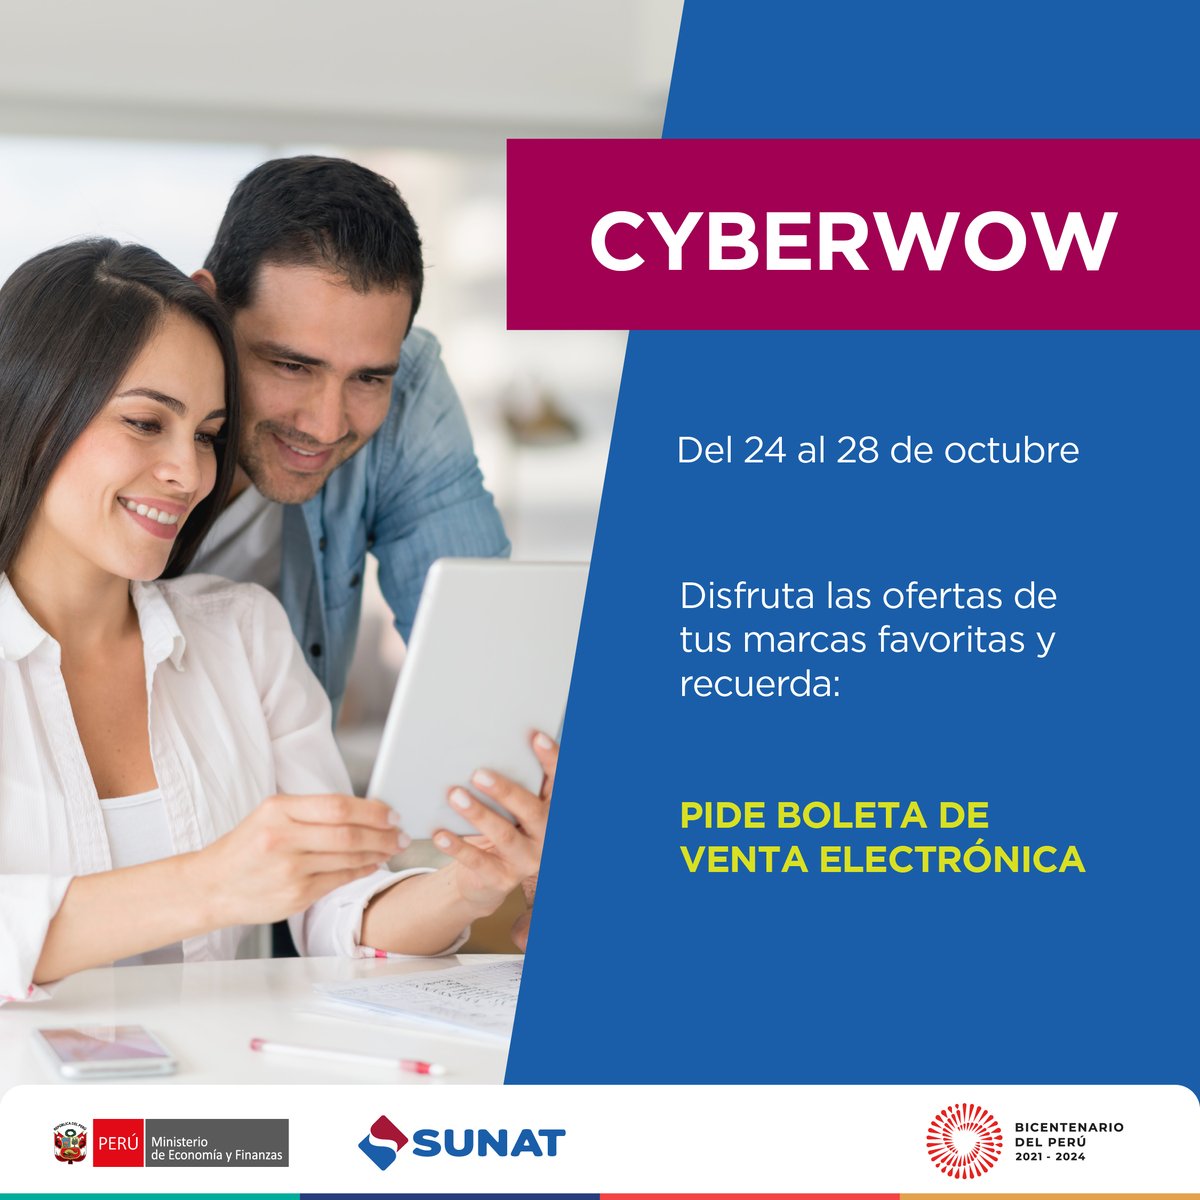 Hoy inicia la semana del #cyberwow 🛒🛍 Empresarios y #emprendedores se unen para ofertar productos y servicios 'en línea'. ¡Verifica que tengas una conexión de internet segura! Y recuerda: #PideBoleta electrónica ☝️🏾